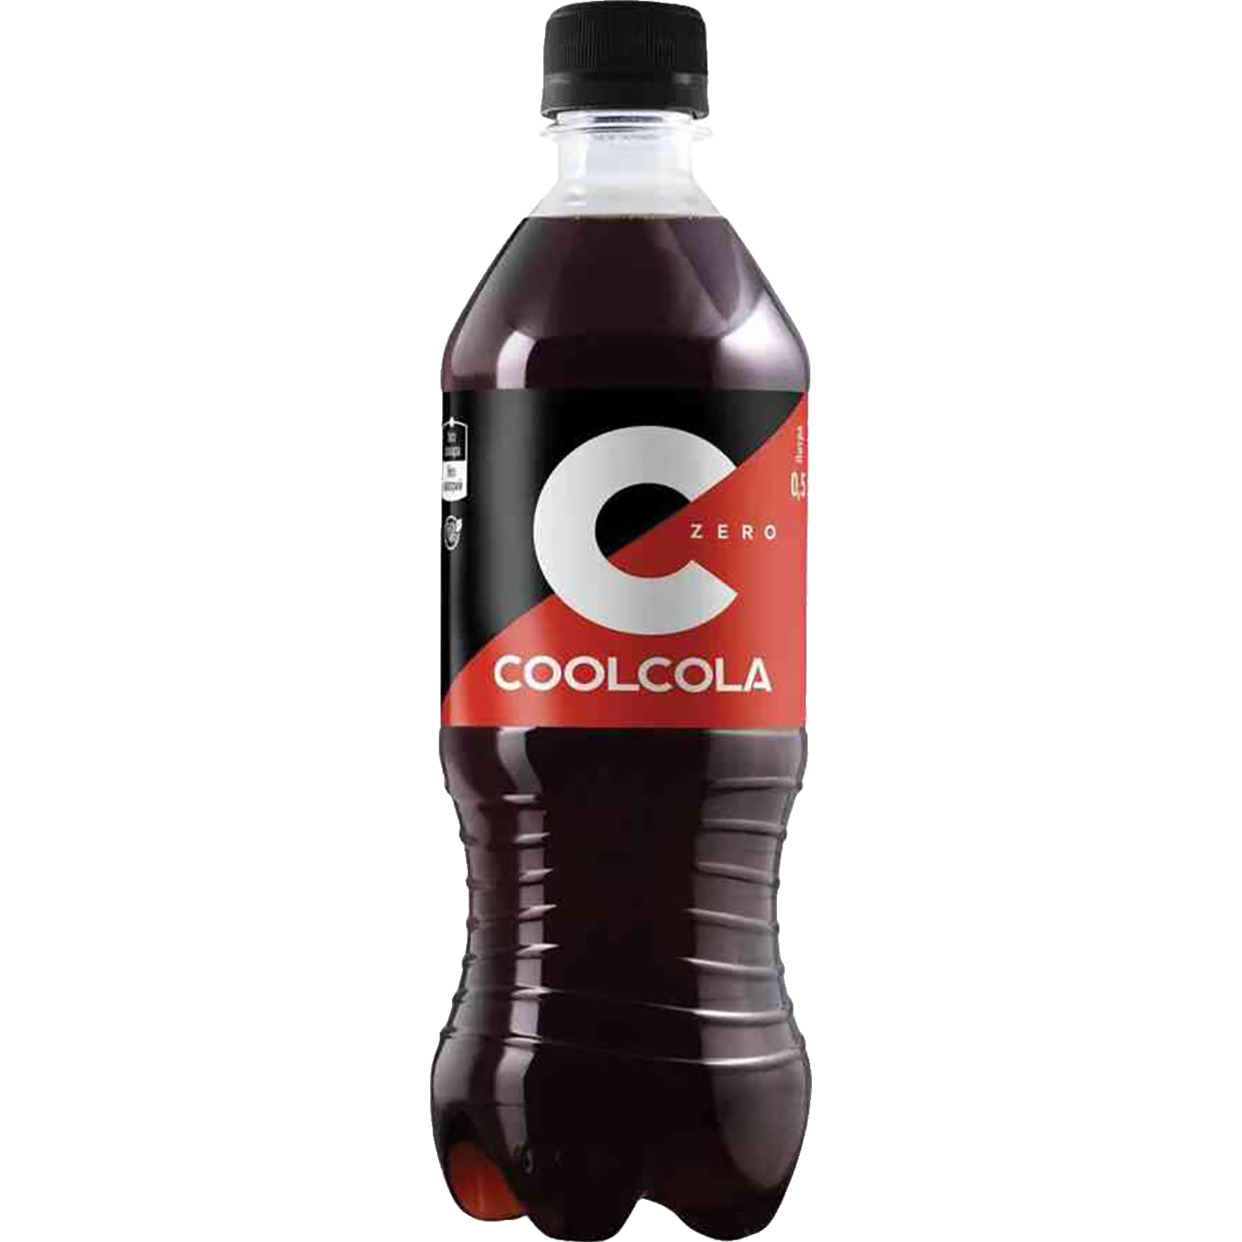 Напиток "Кул Кола без сахара" ("Cool Cola Zero") безалкогольный сильногазированный ПЭТ 0,5 л по акции в Пятерочке